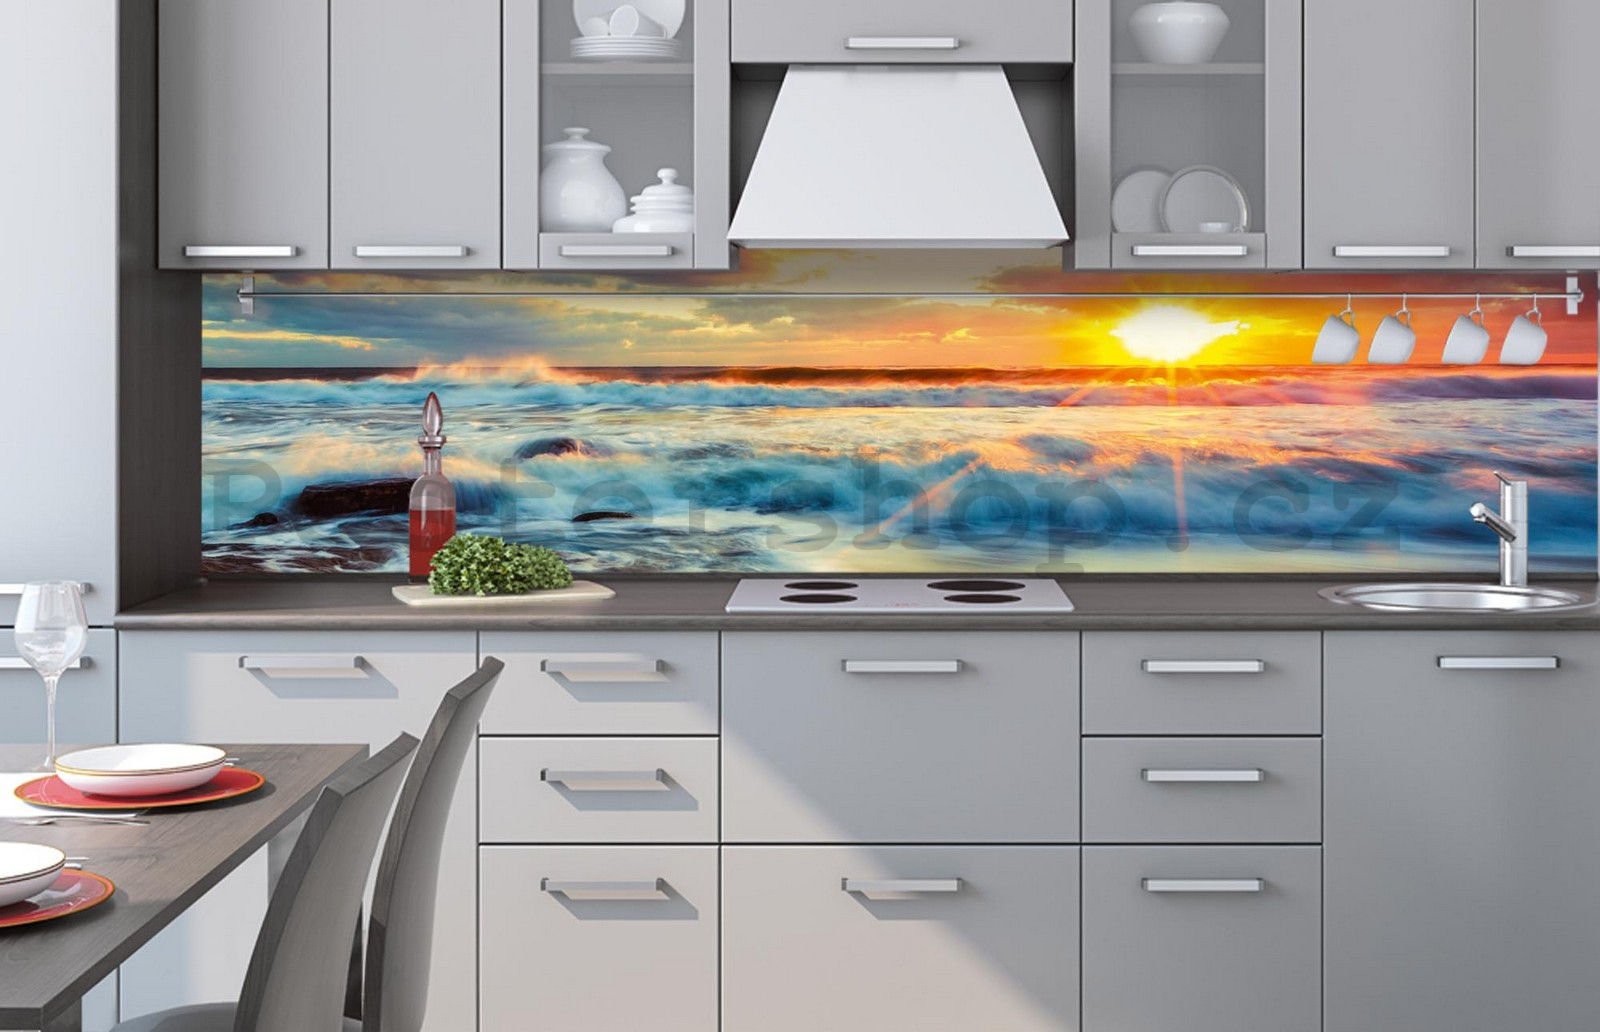 Samolepící omyvatelná tapeta za kuchyňskou linku - Západ slunce na pláži, 260x60 cm